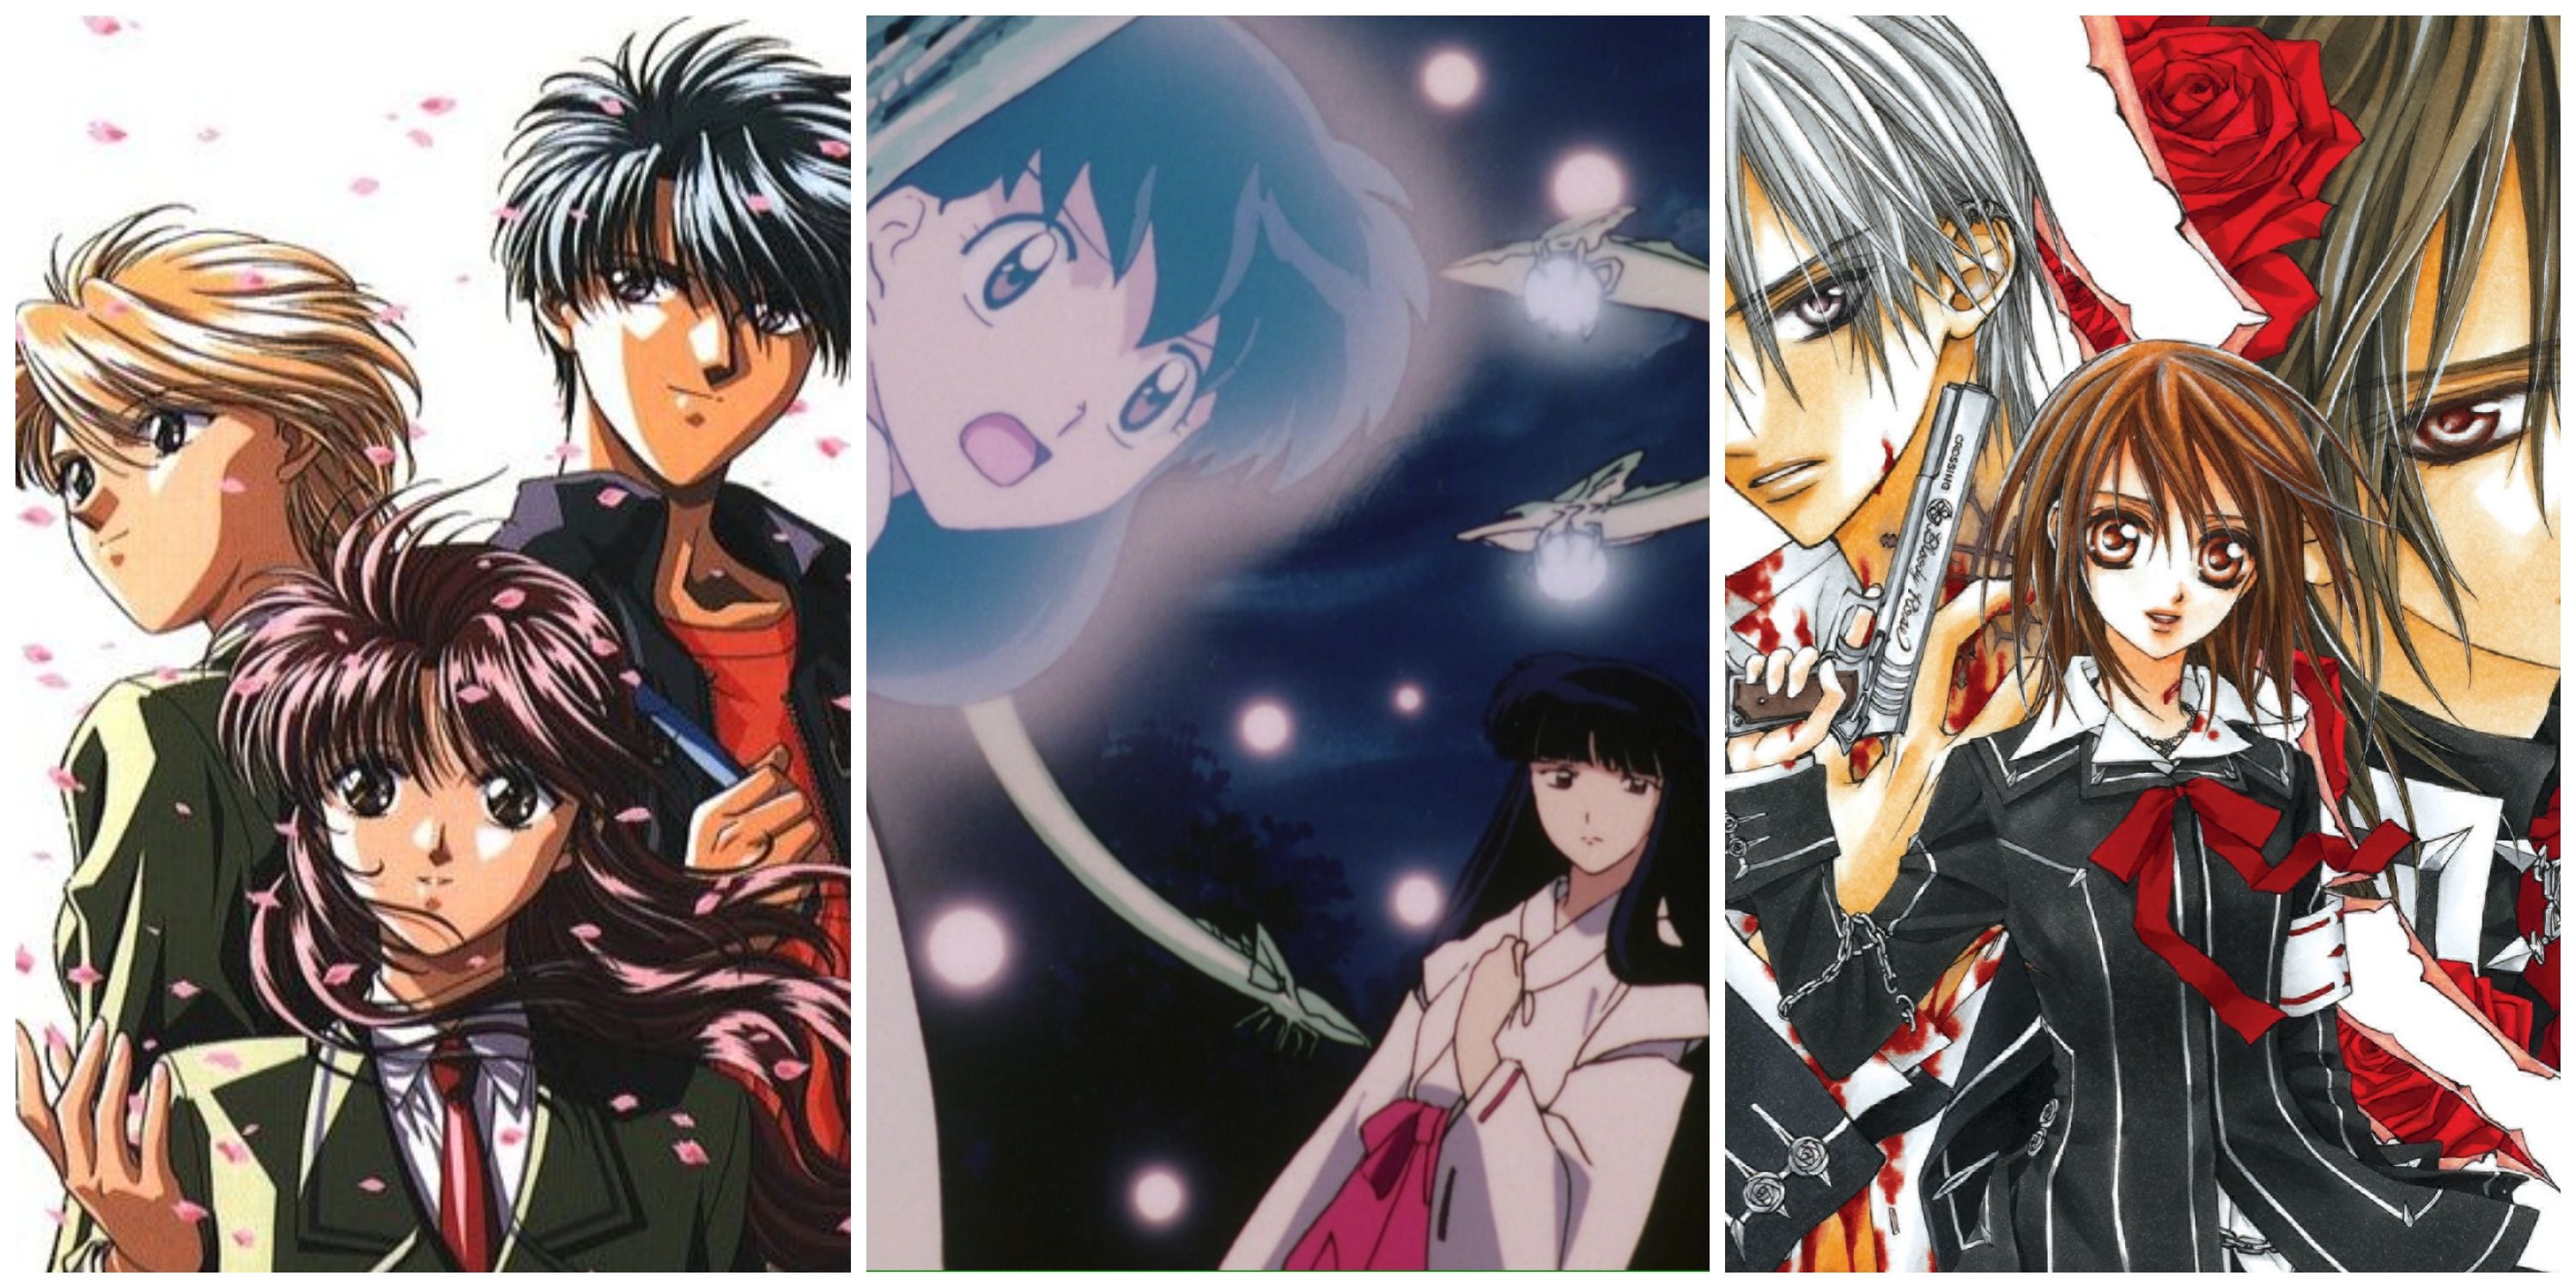 Split image, Yui and Miaka and Tamahome from Fushigi Yugi, Kagome and Kikyo from InuYasha, and Zero and Yuki and Kaname from Vampire Knight.